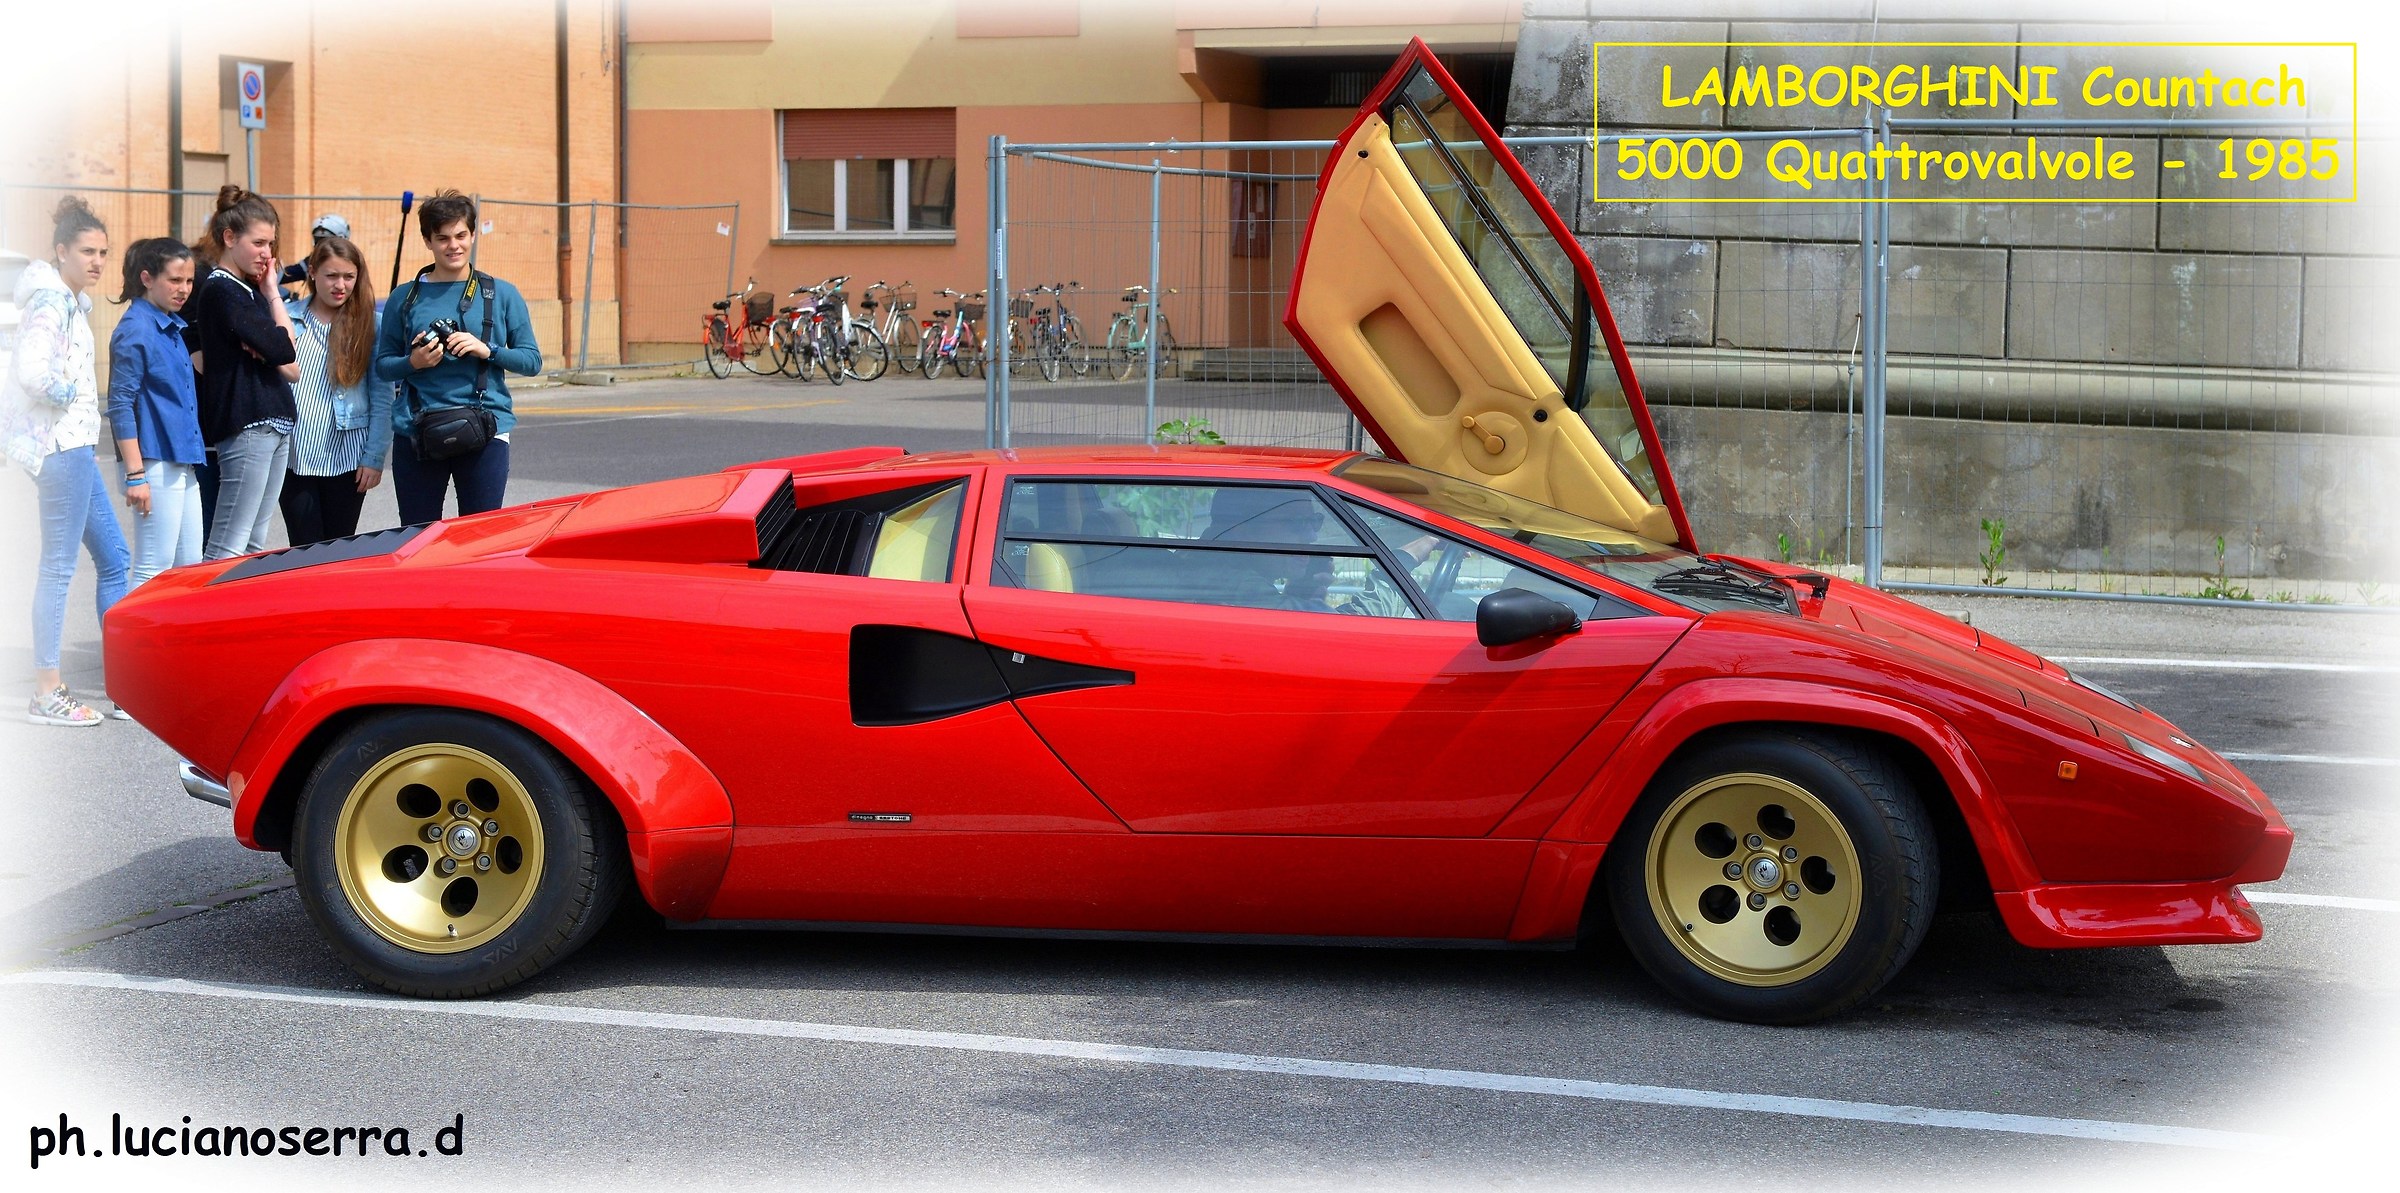 Lamborghini Countach 5000 Quattrovalvole - 1985...